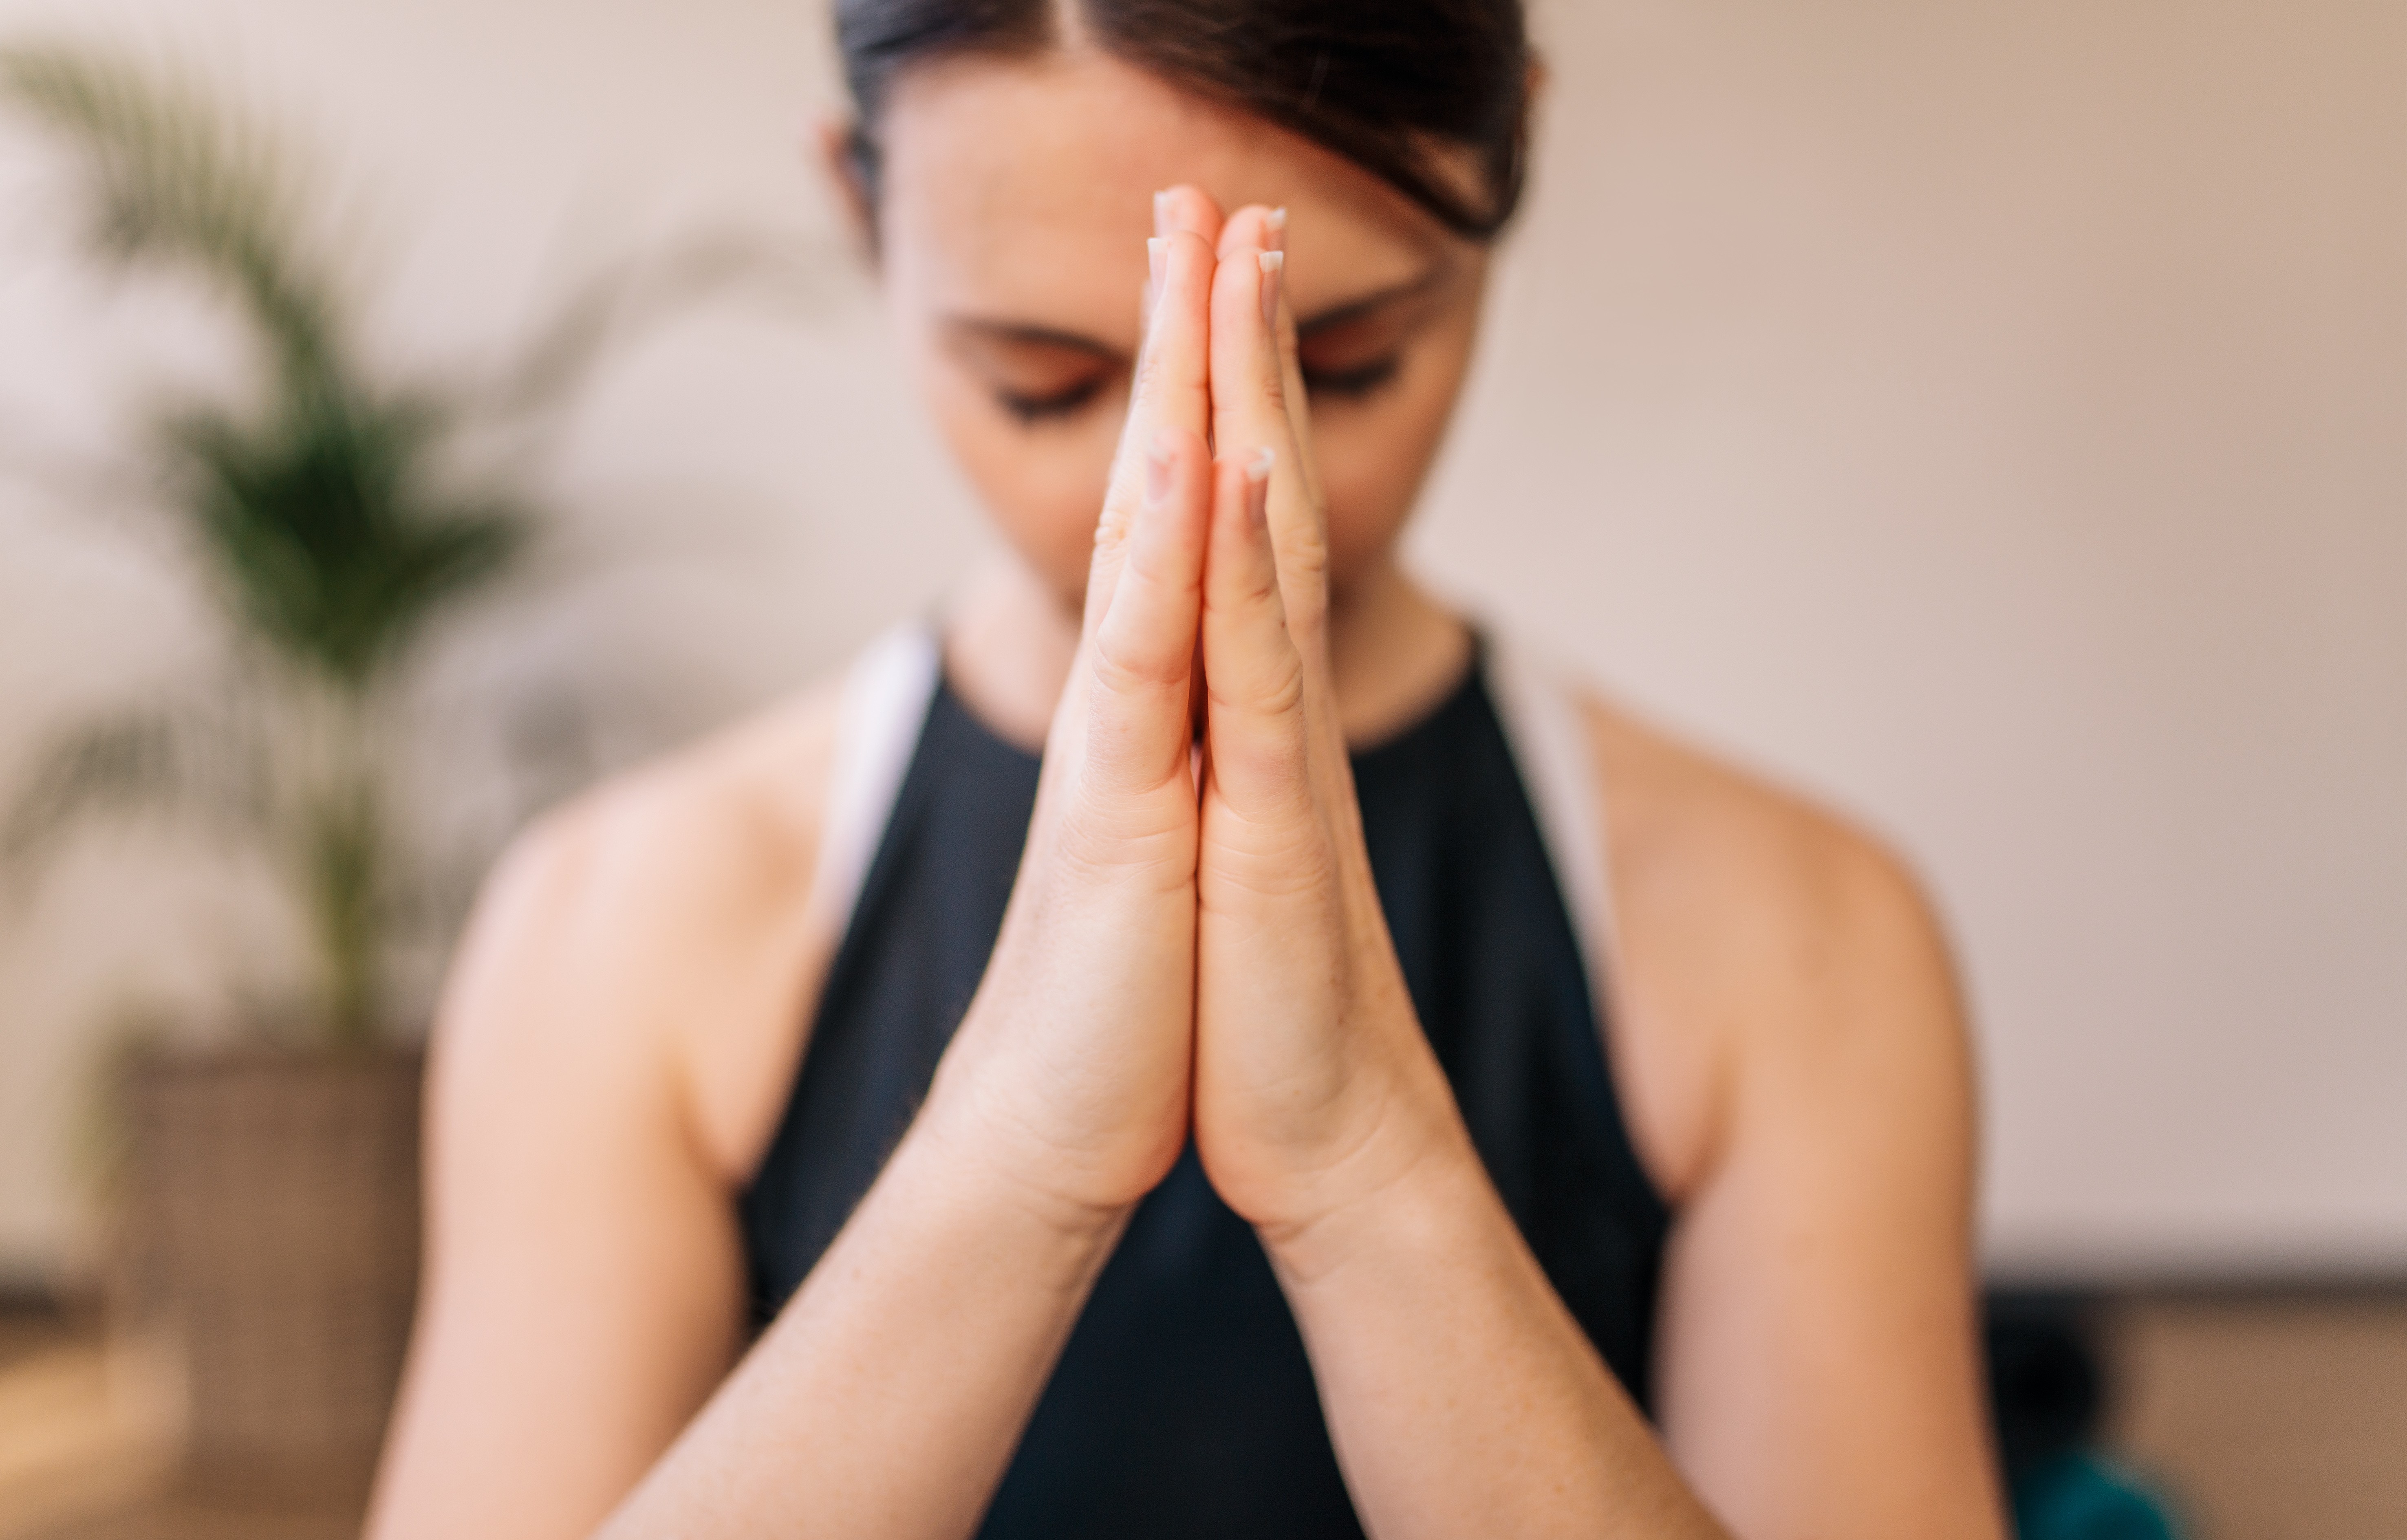 Primer plano de manos de mujeres unidas. Mujer meditando con las manos unidas en un ambiente interior. Postura de namaste yoga, meditando, respirando y relajándose.